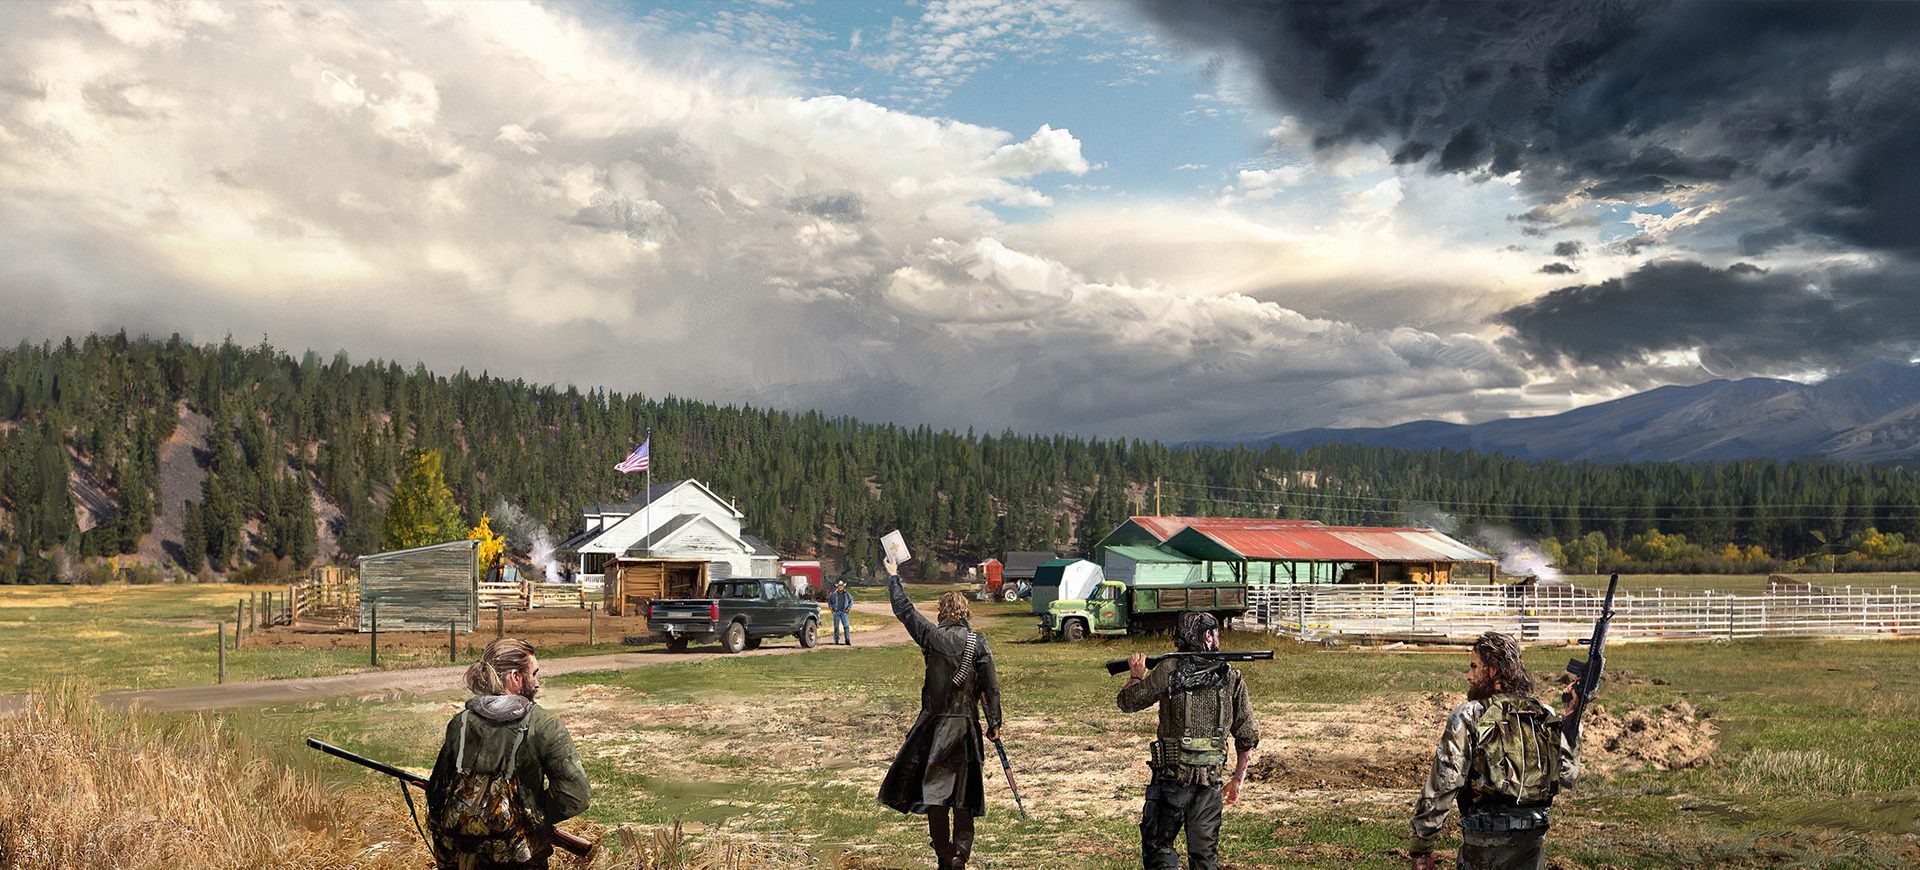 Far Cry 5 - Tiền tuyến quê nhà - Giới thiệu game